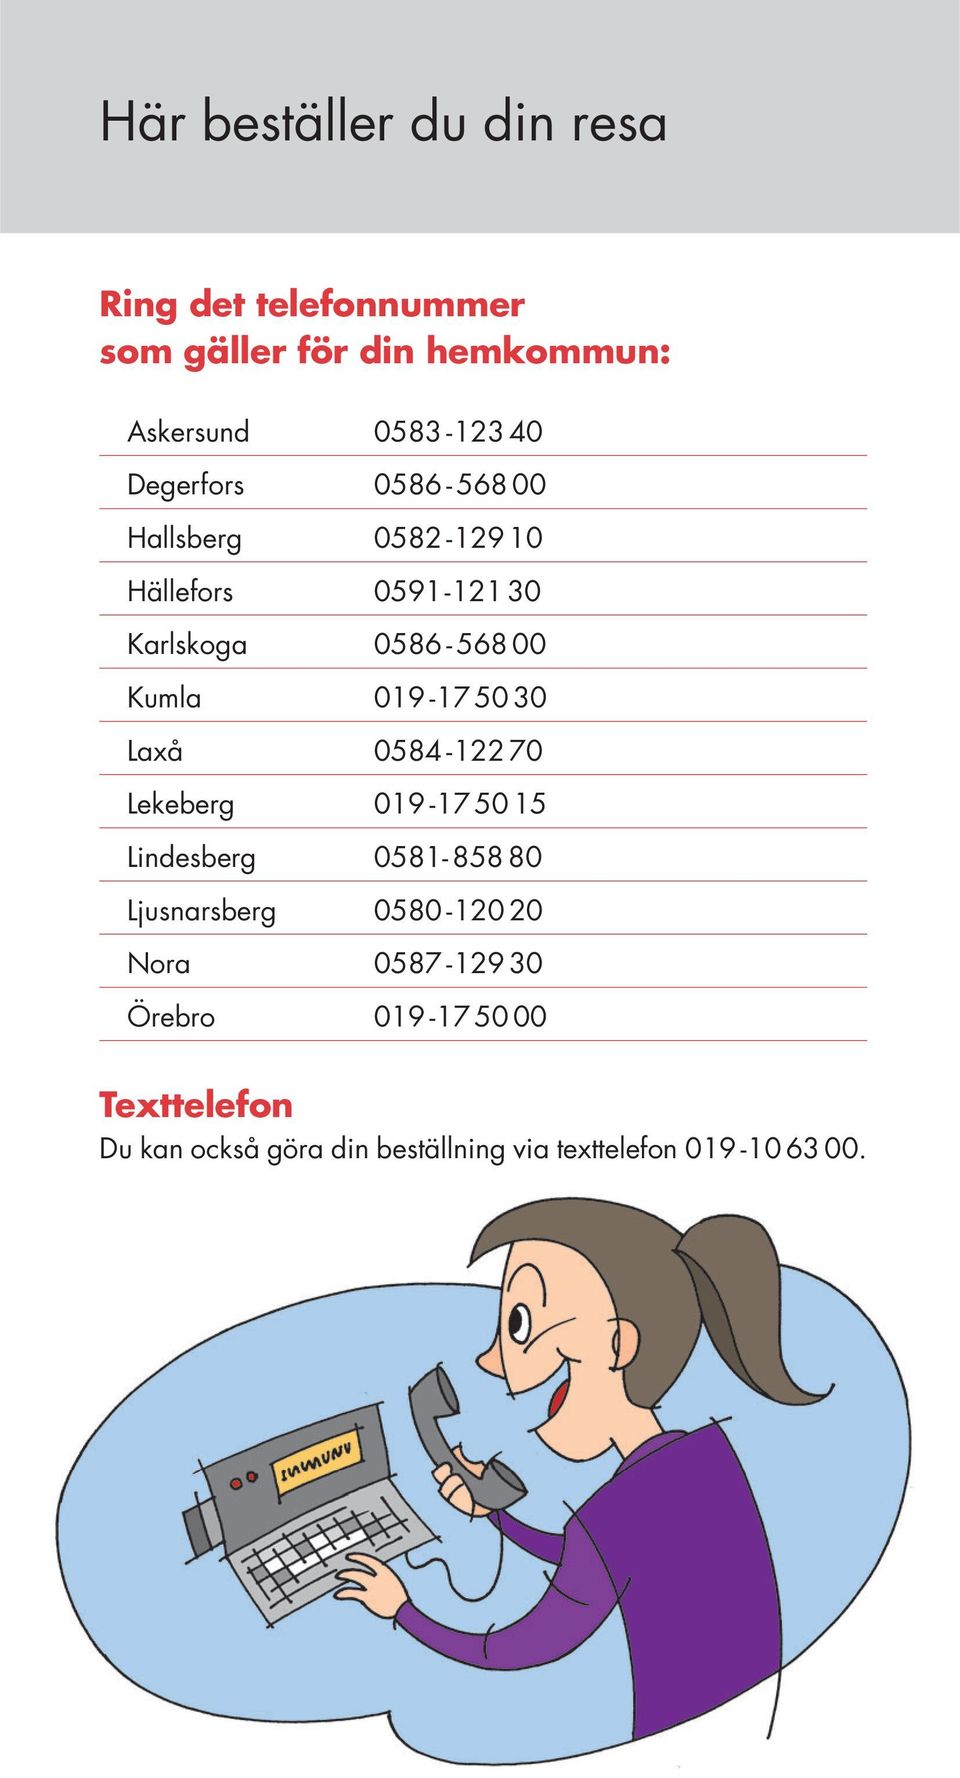 50 30 Laxå 0584-122 70 Lekeberg 019-17 50 15 Lindesberg 0581-858 80 Ljusnarsberg 0580-120 20 Nora